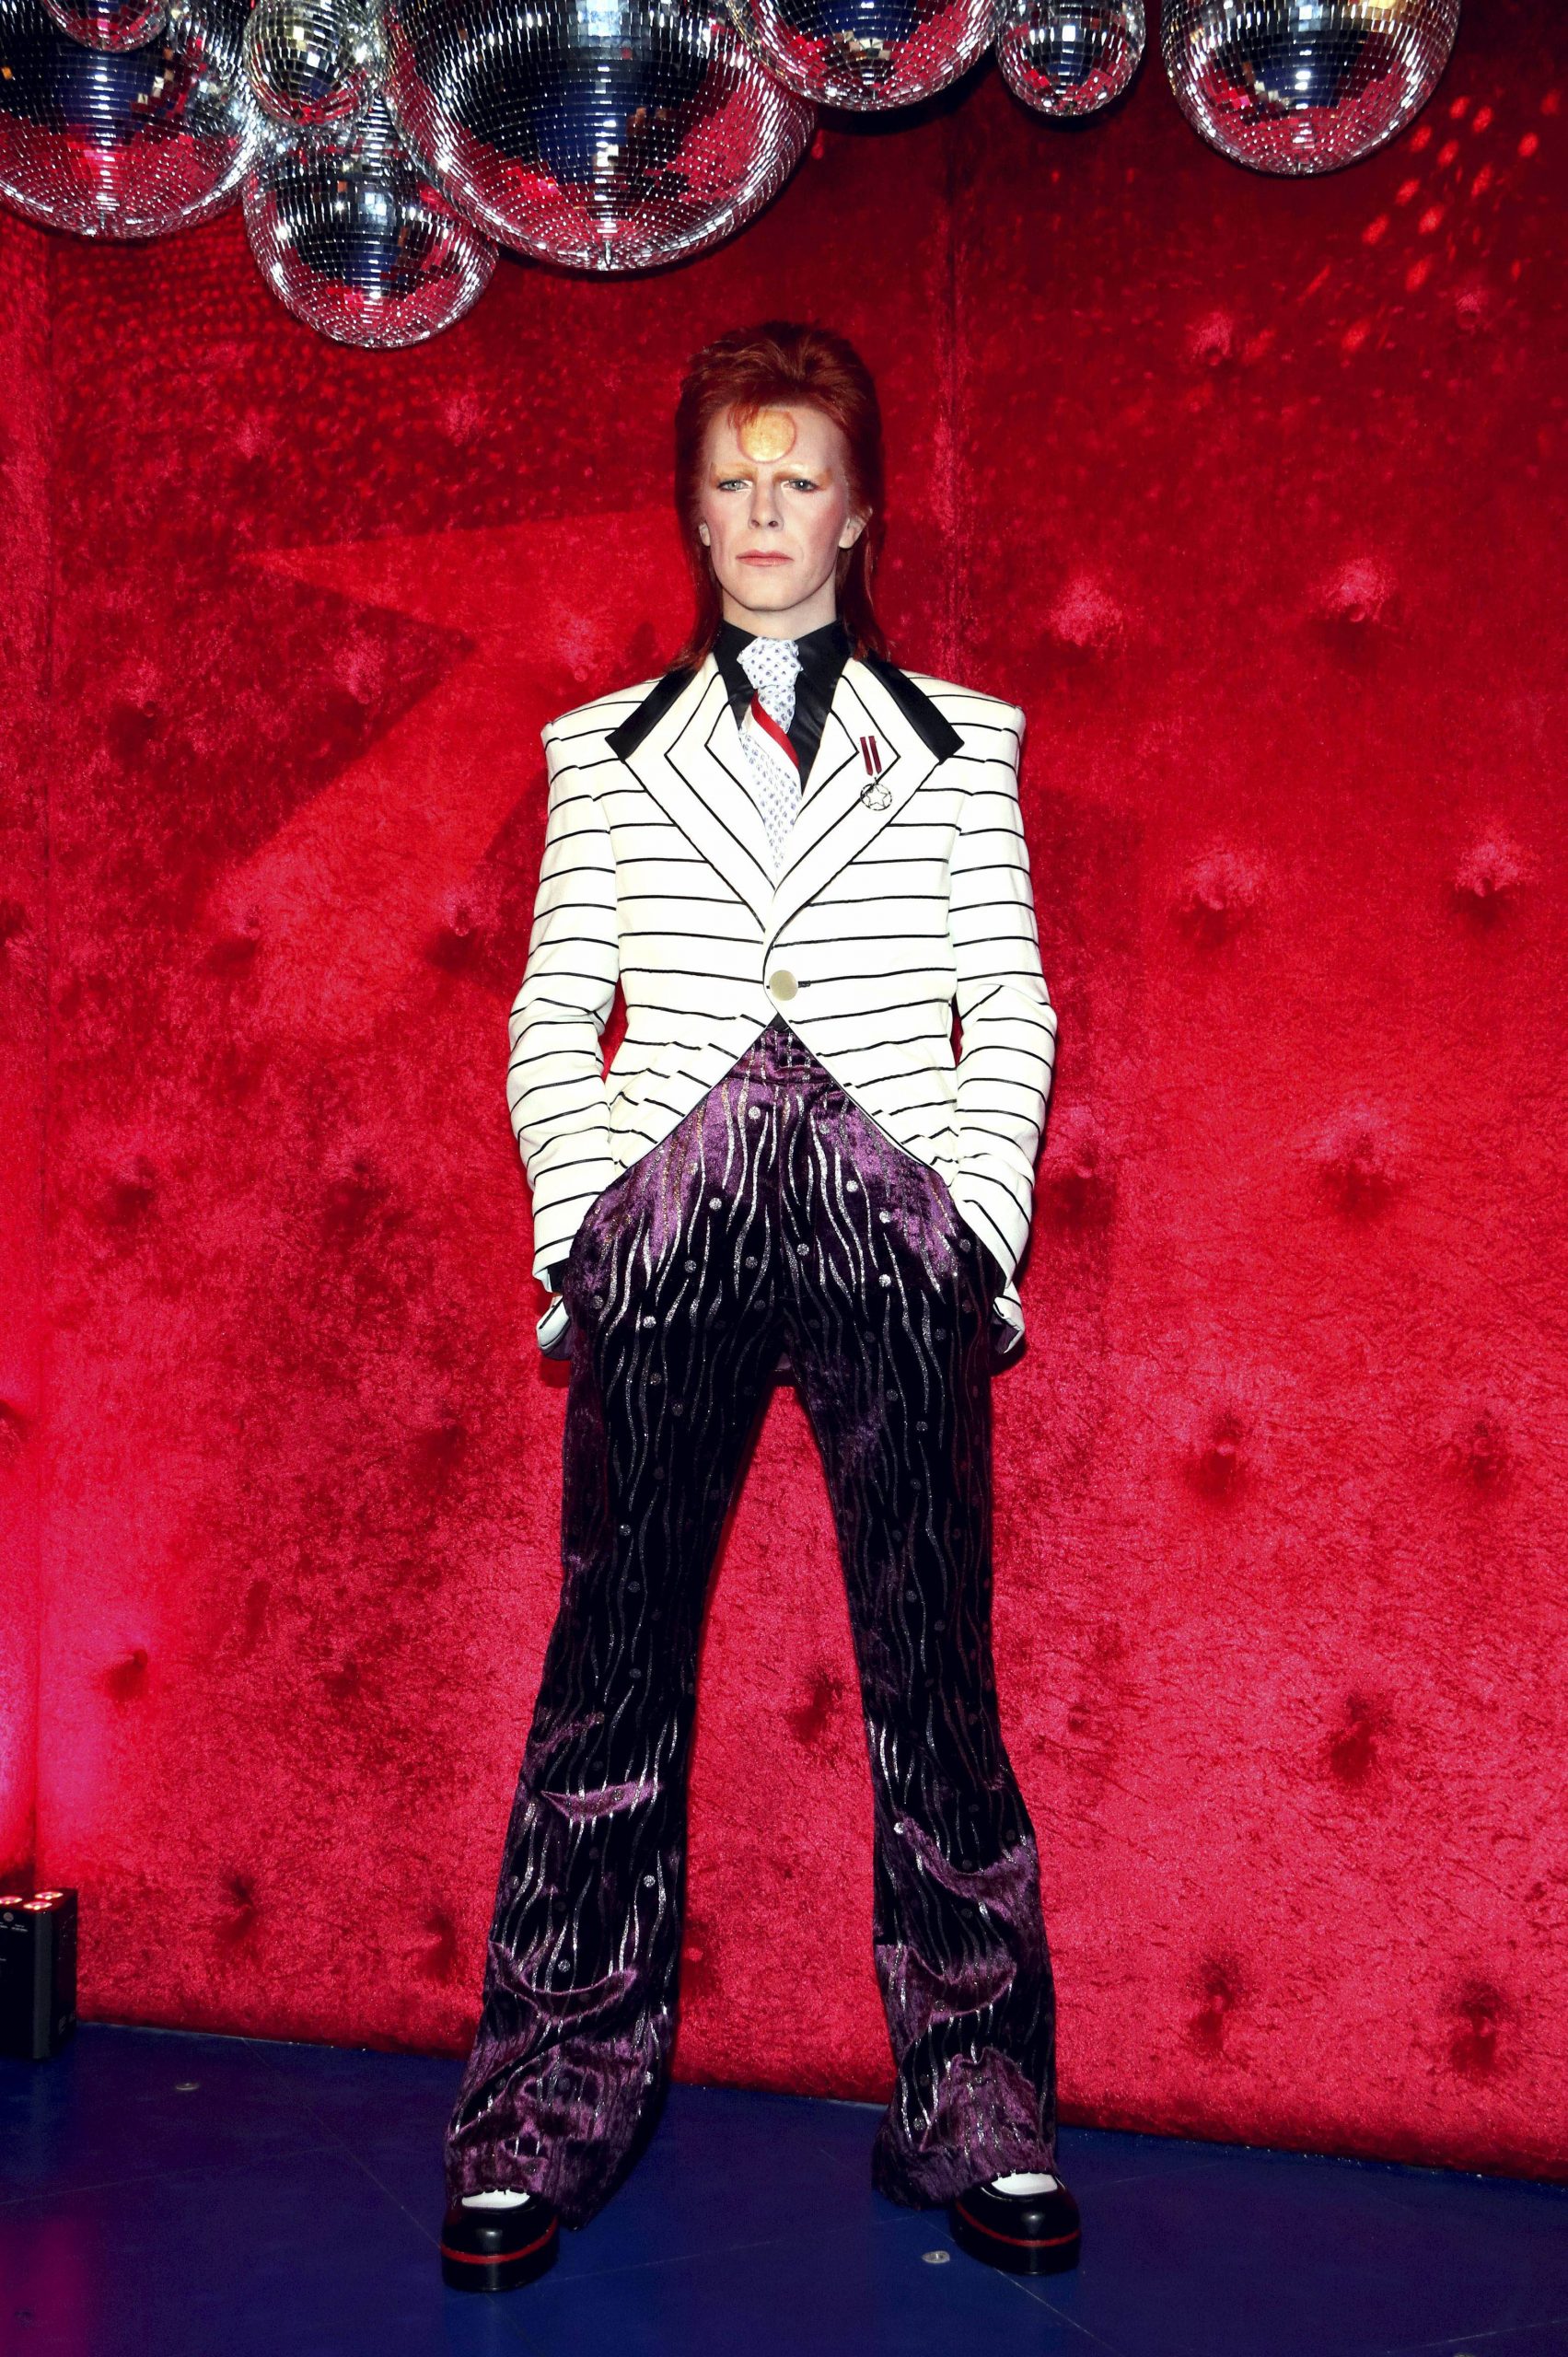 Enthüllung der Wachsfigur von David Bowie als Ziggy Stardust im Madame Tussauds. Aufnahme vom September 2017.